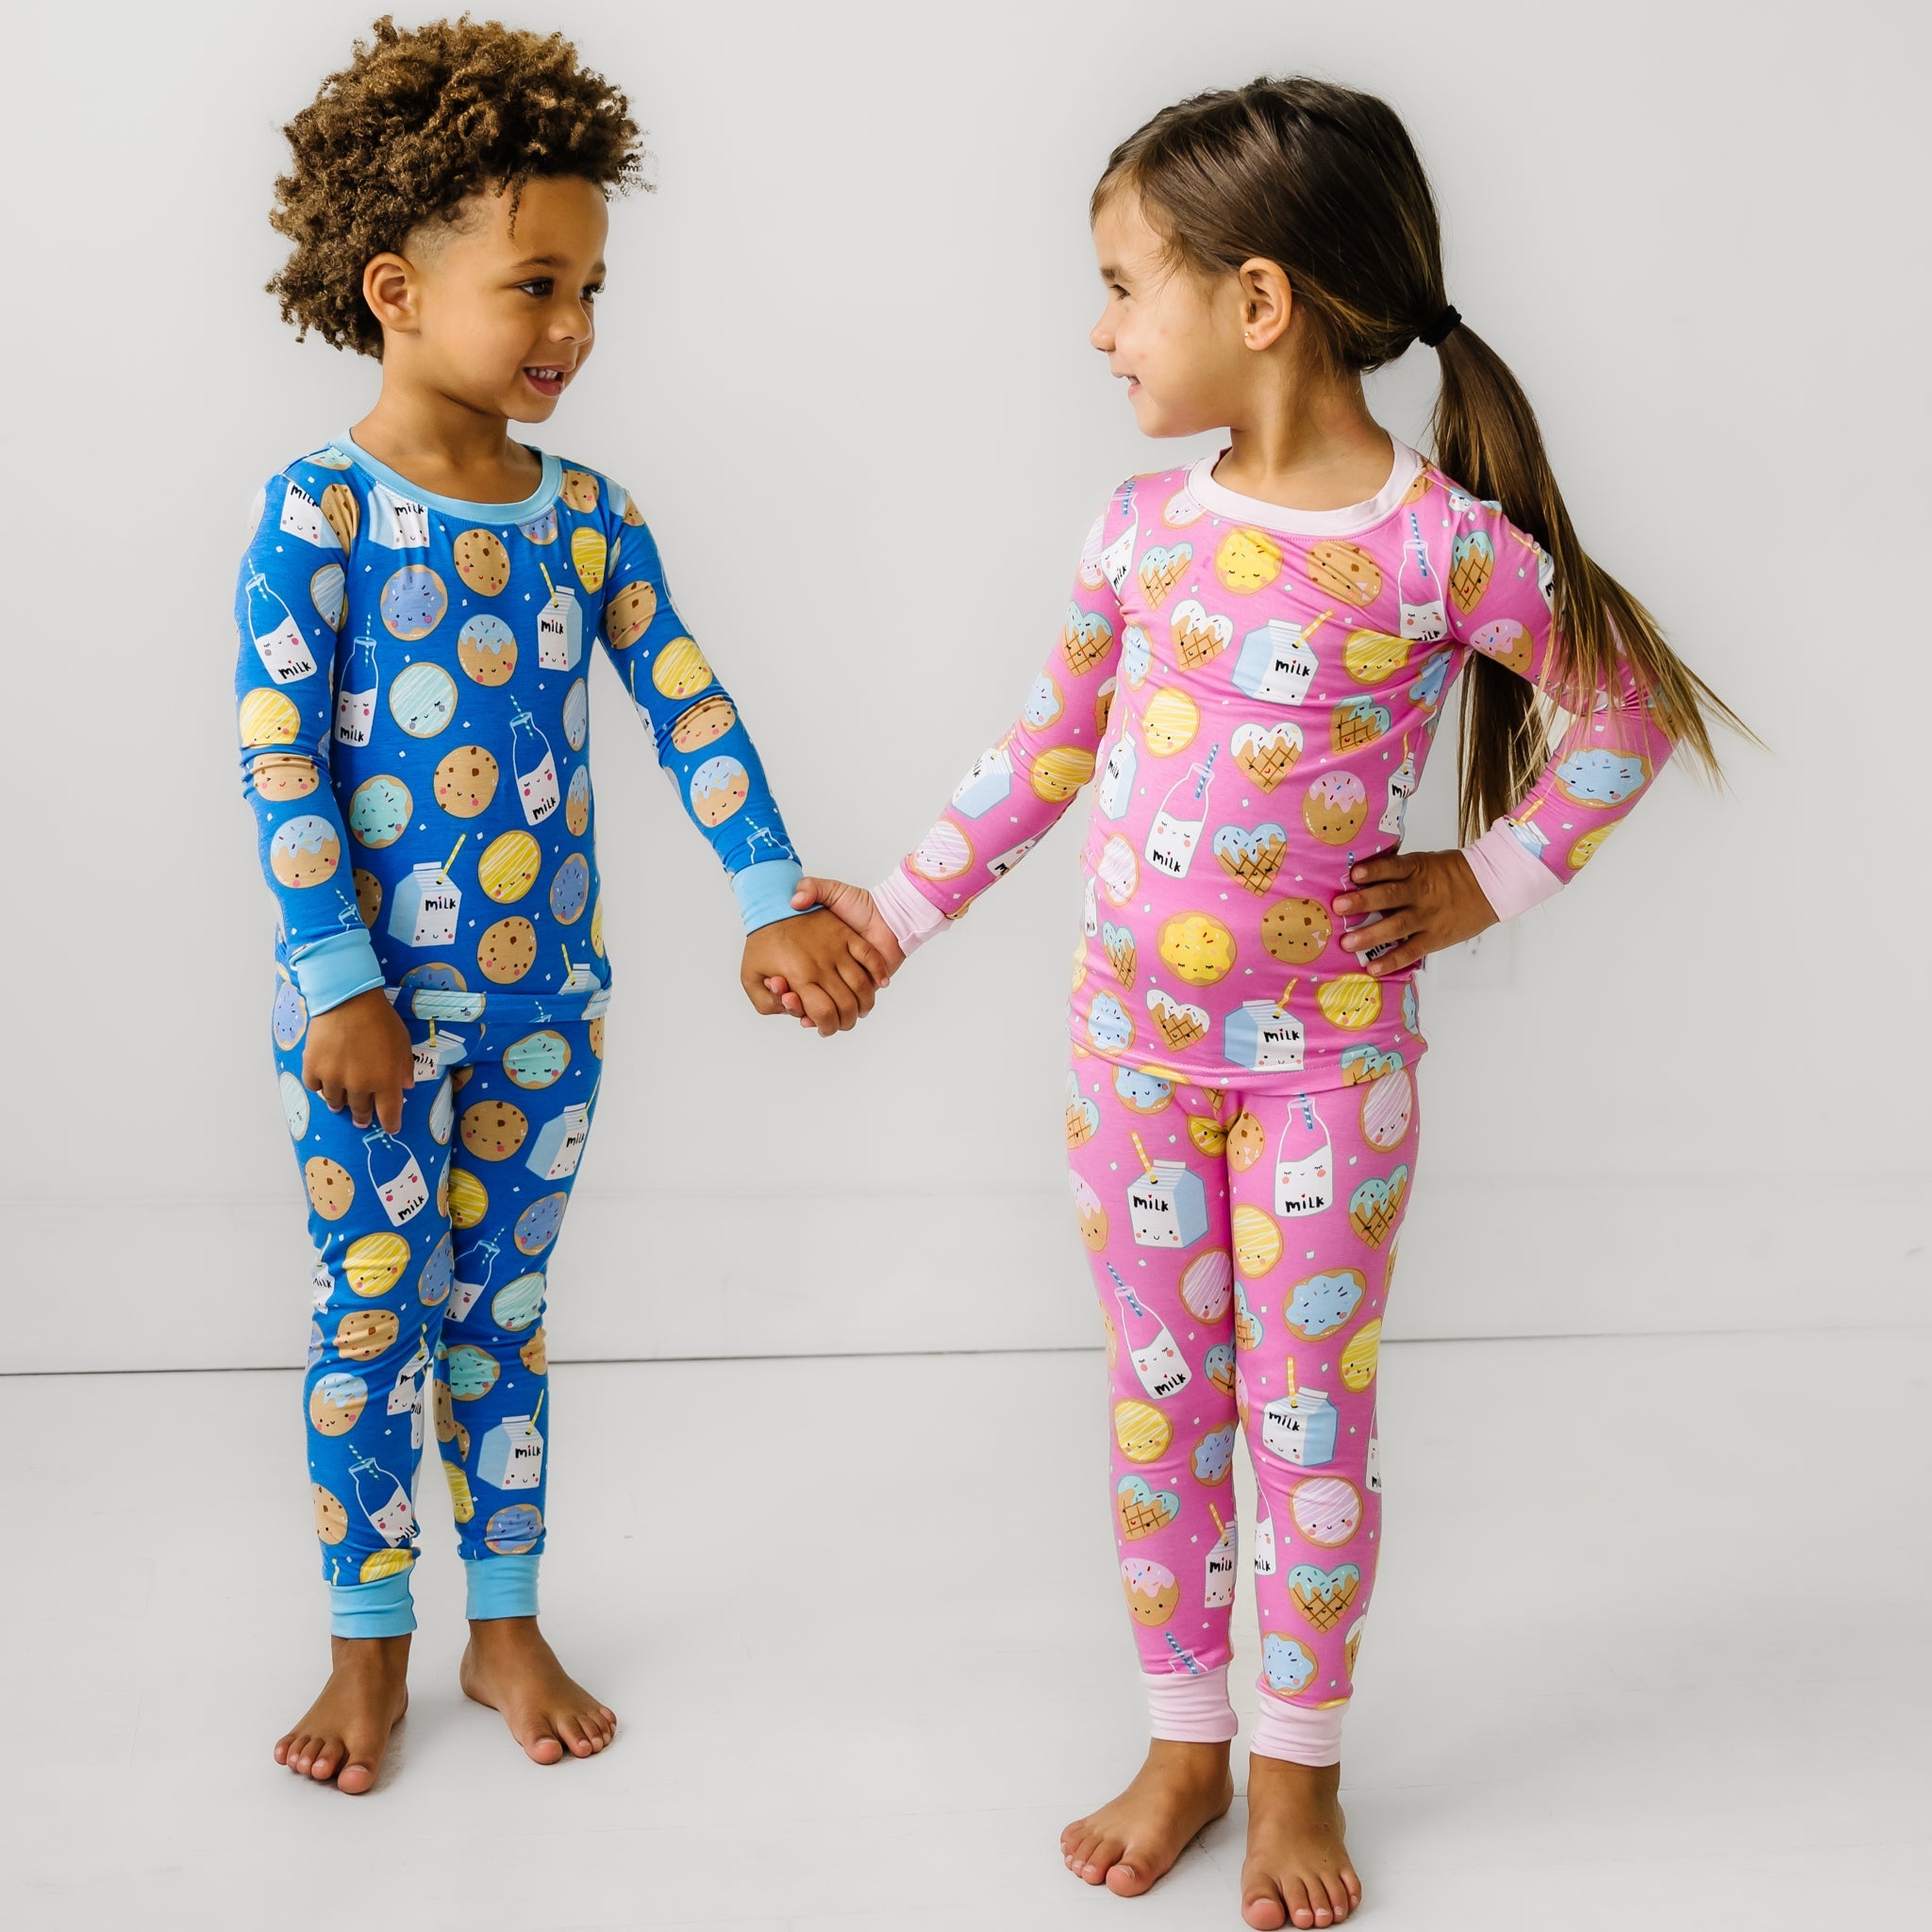 kids in pajamas